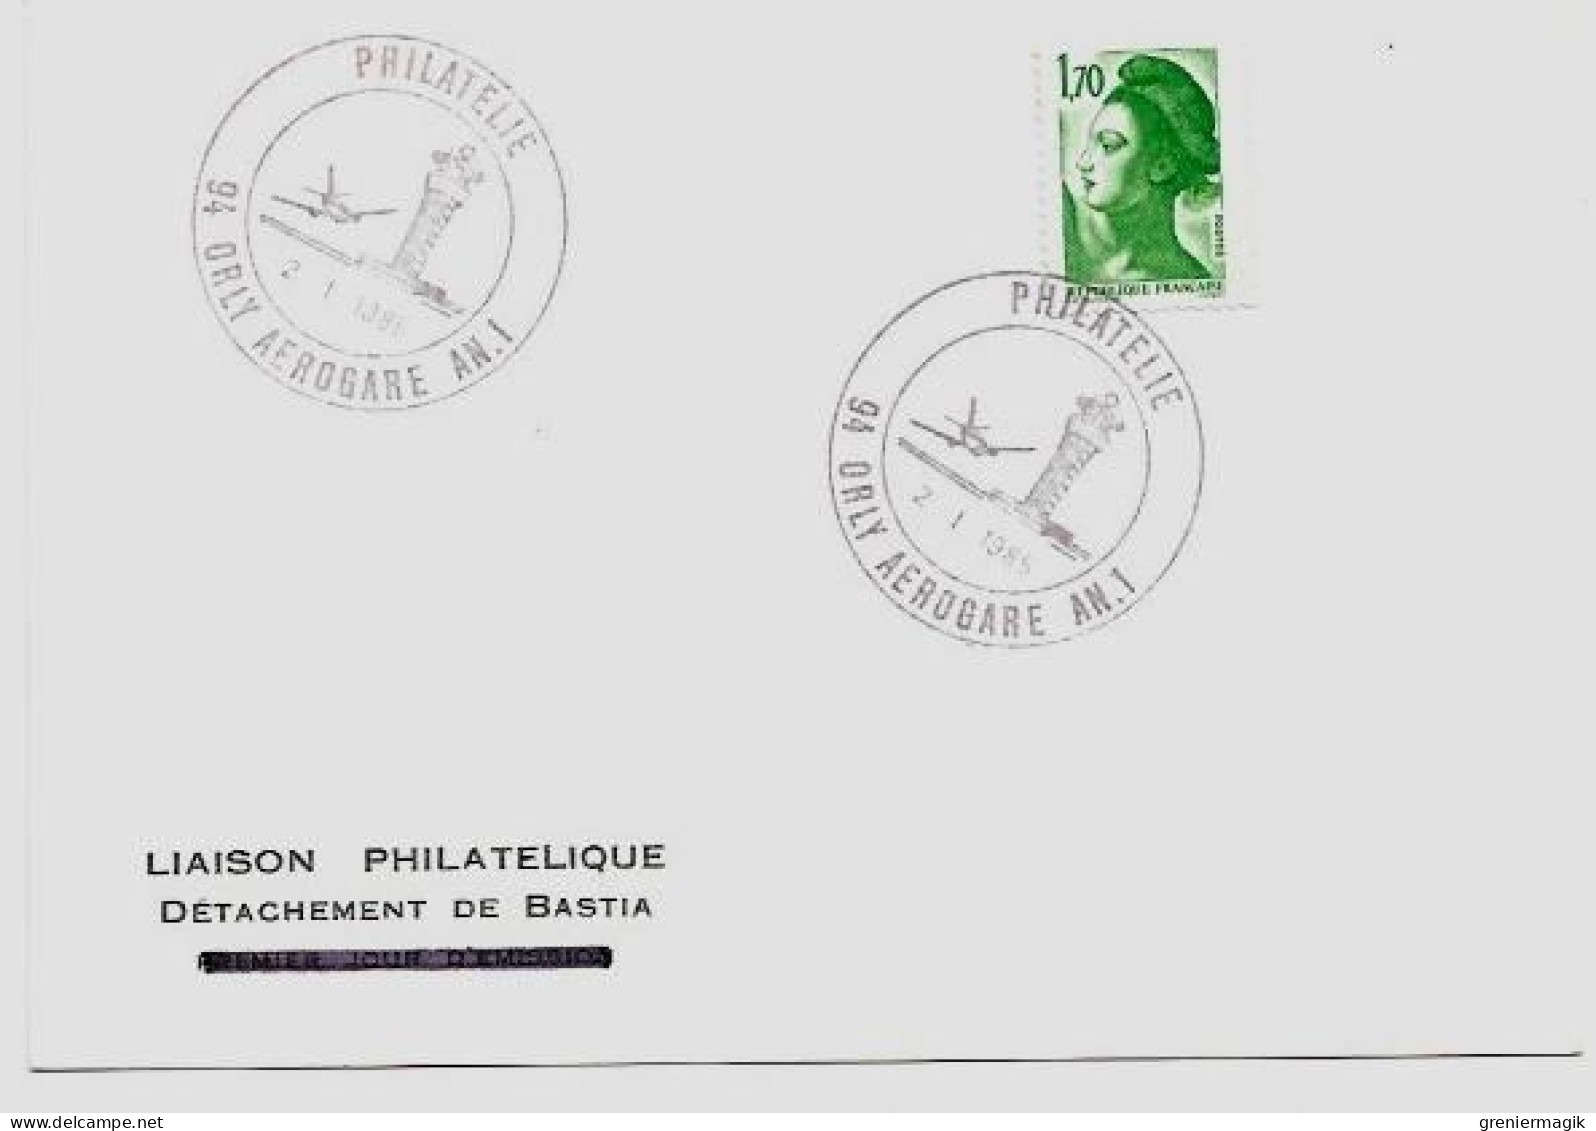 N°2318 Cachet Philatélie Orly Aérogare AN. 1 2/1/1985 (Tour De Contrôle) - Liaison Philatélique Bastia Liberté 1,70 Vert - Aushilfsstempel